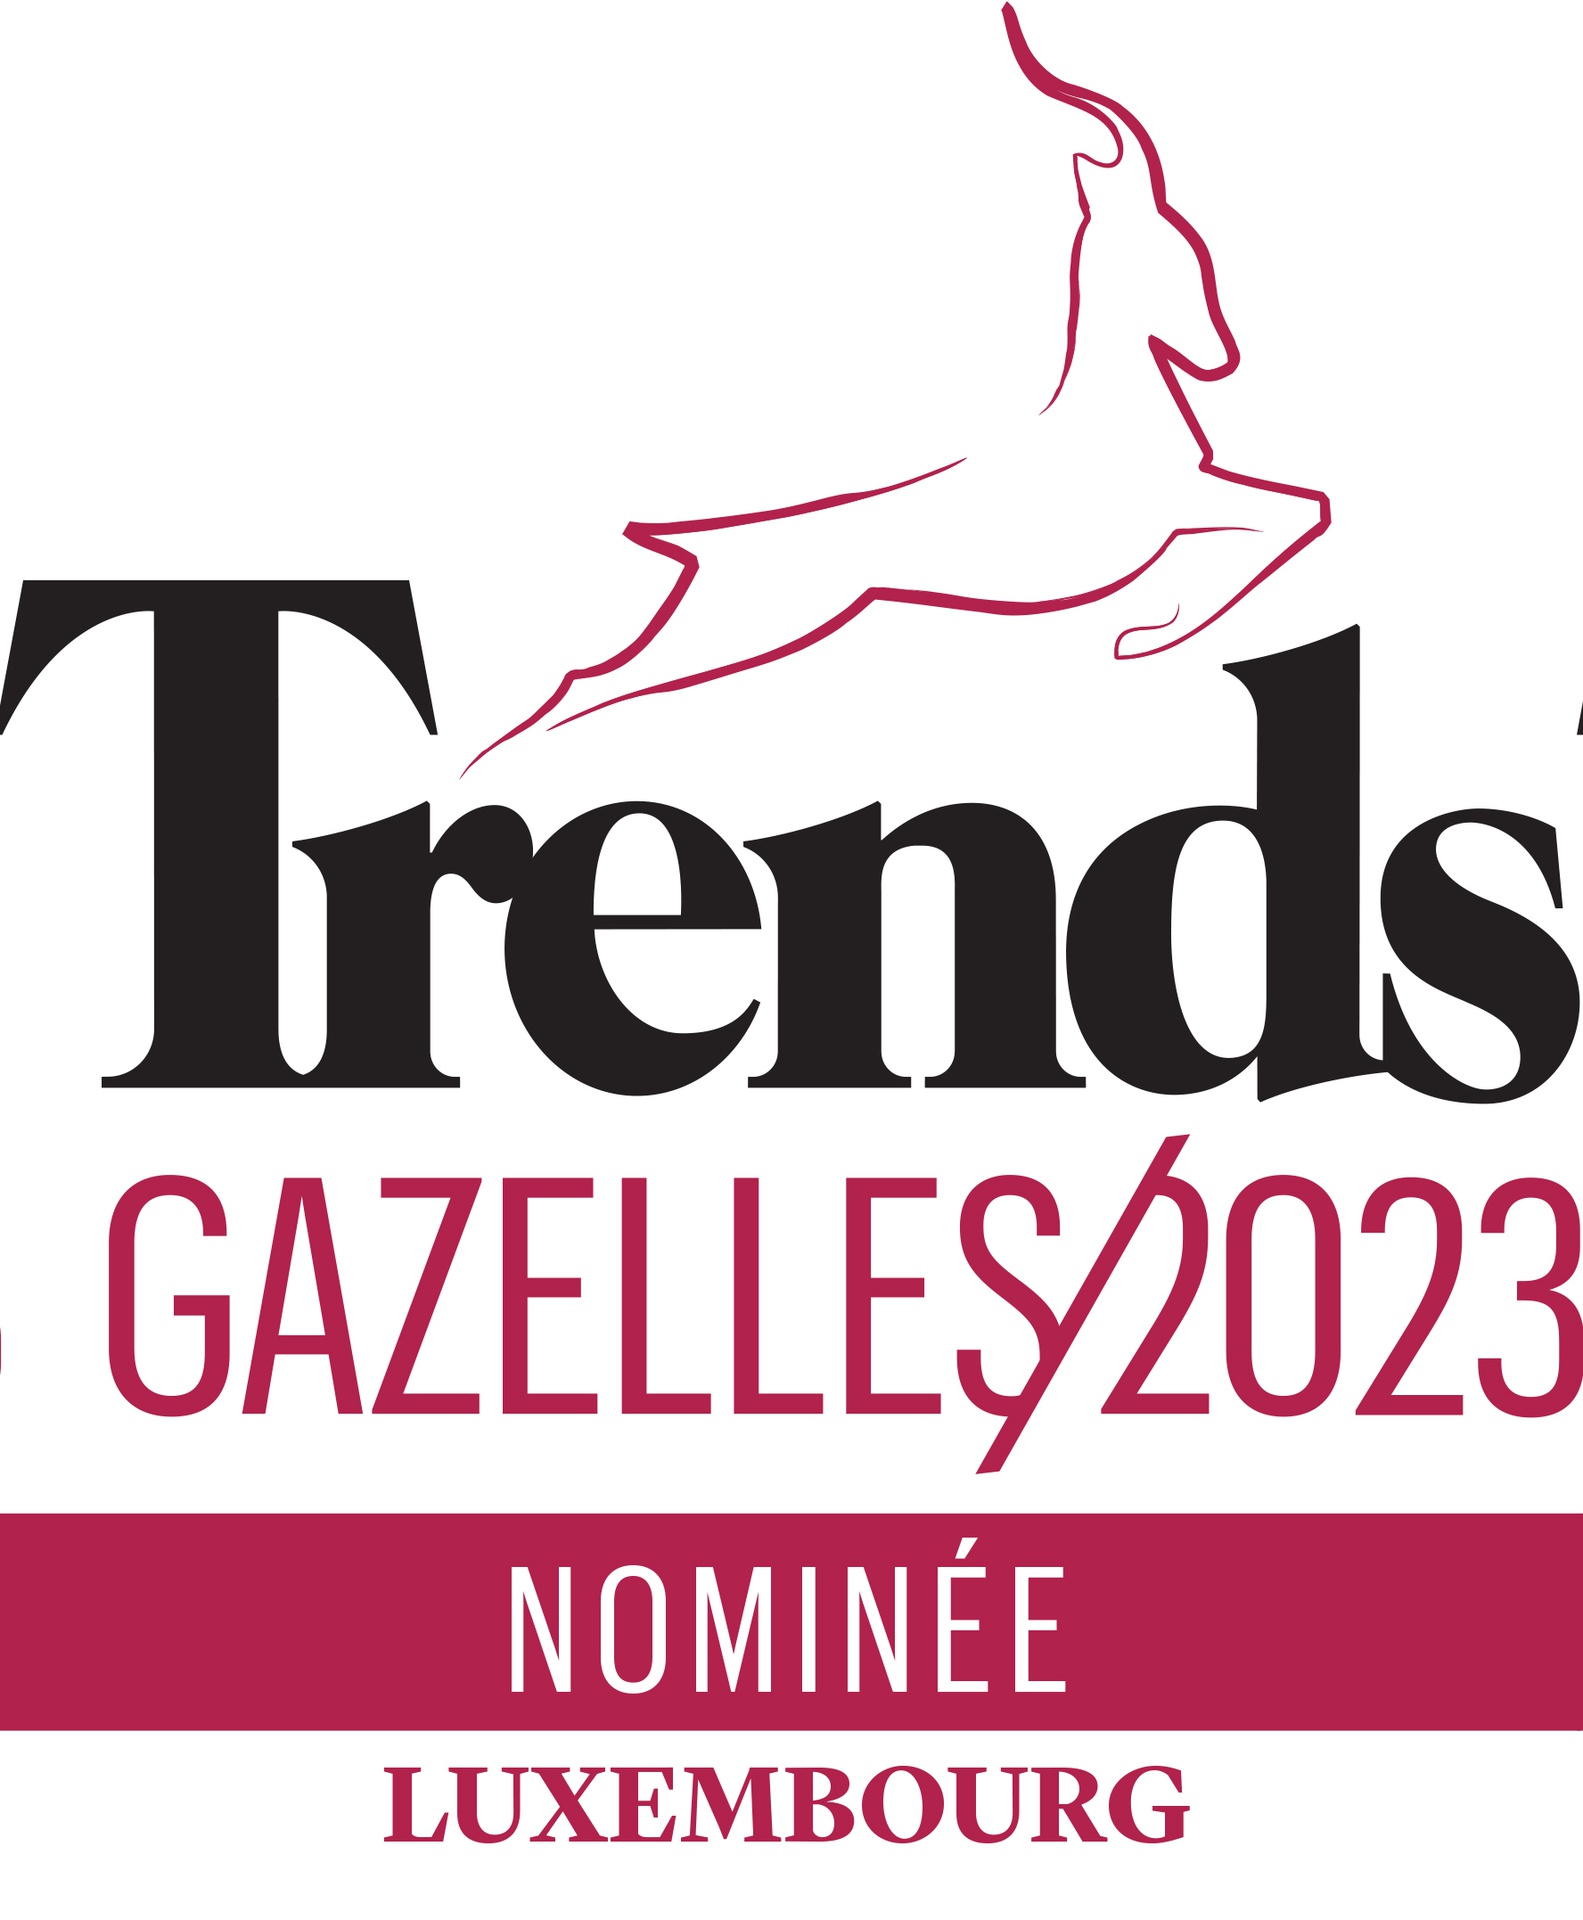 Résultats trends gazelles 2023 province de Luxembourg